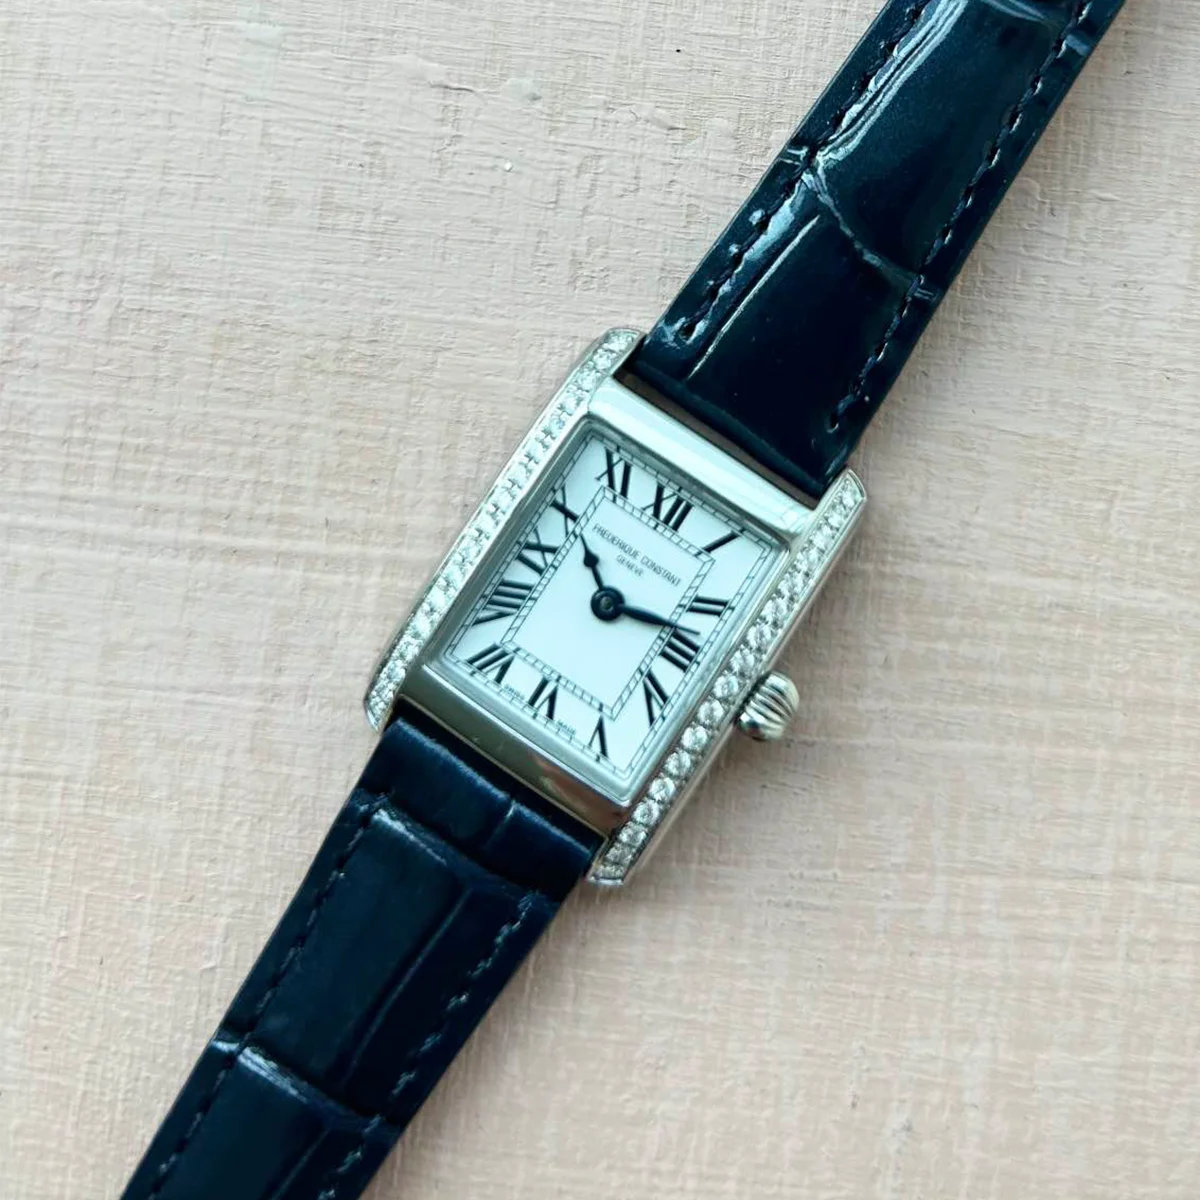 【フレデリック・コンスタント】の腕時計は、「手の届く」名品です